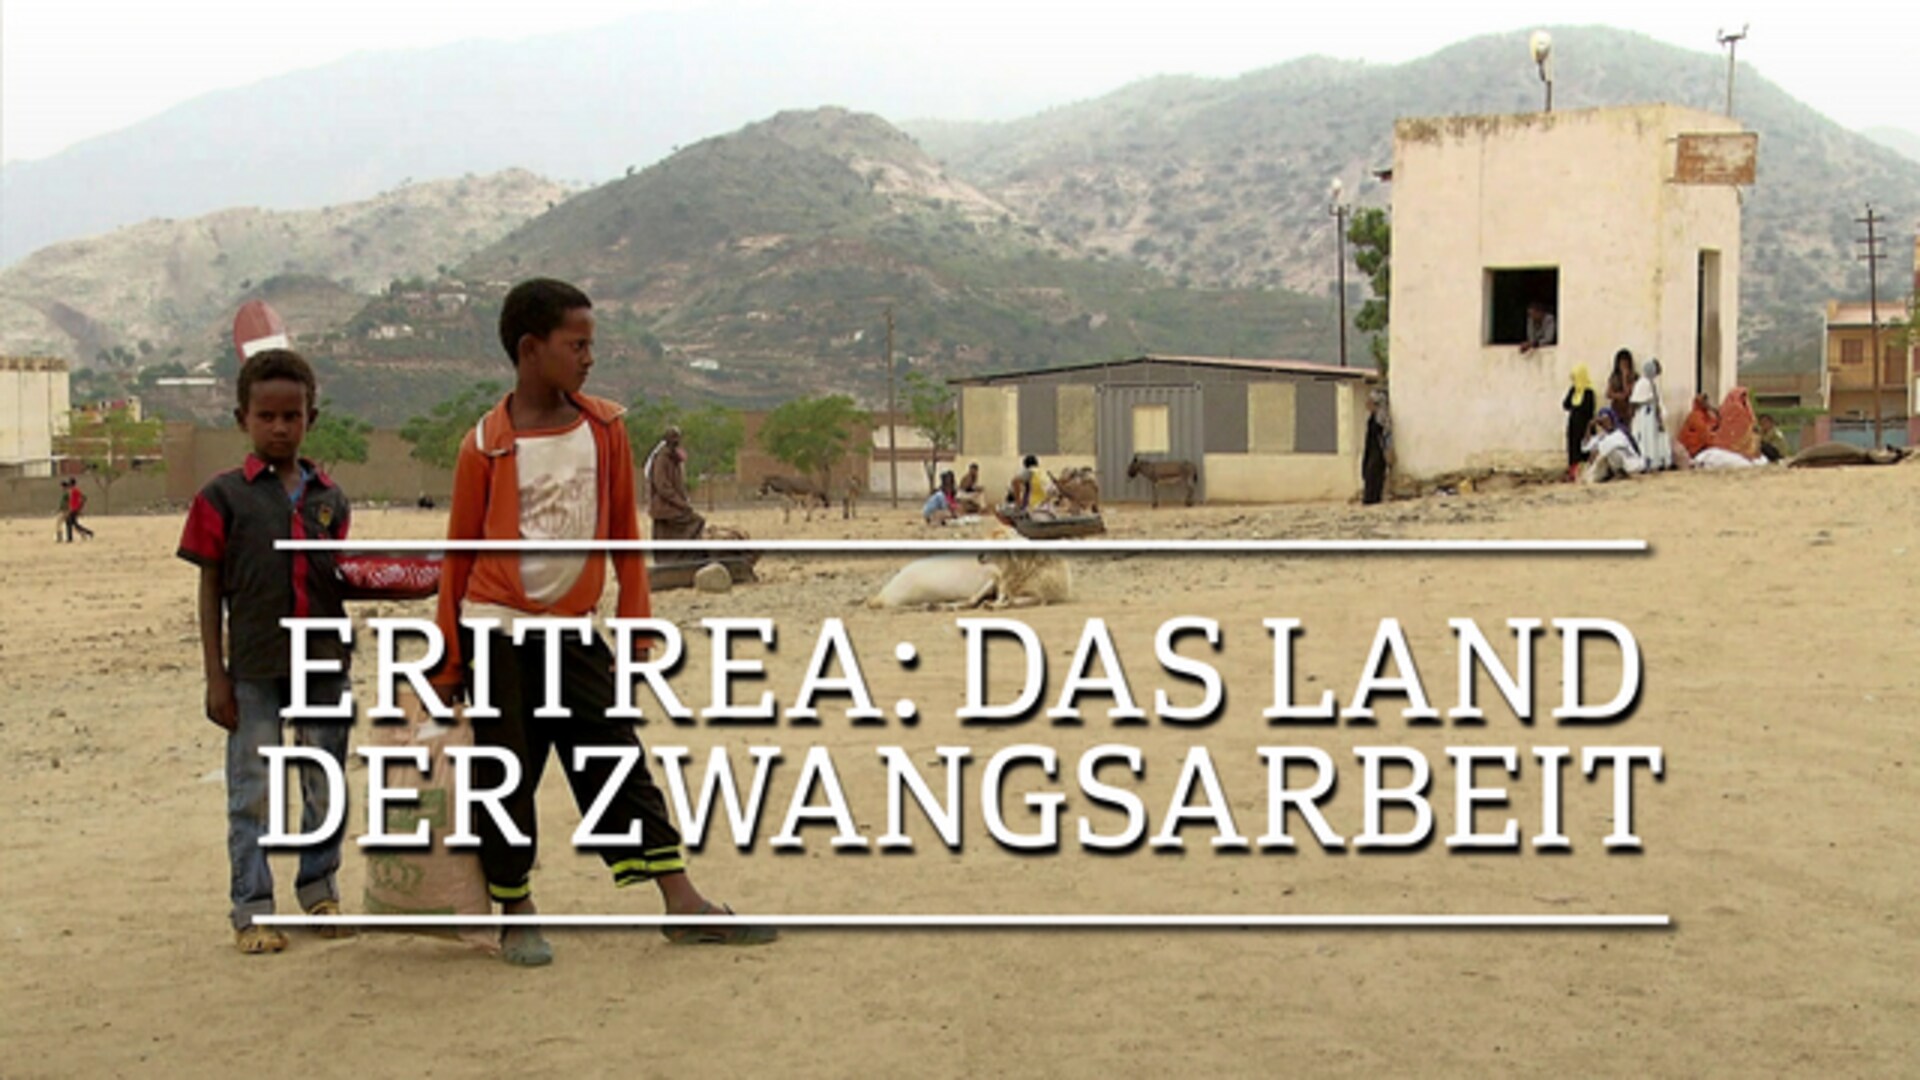 Eritrea: das Land der Zwangsarbeit